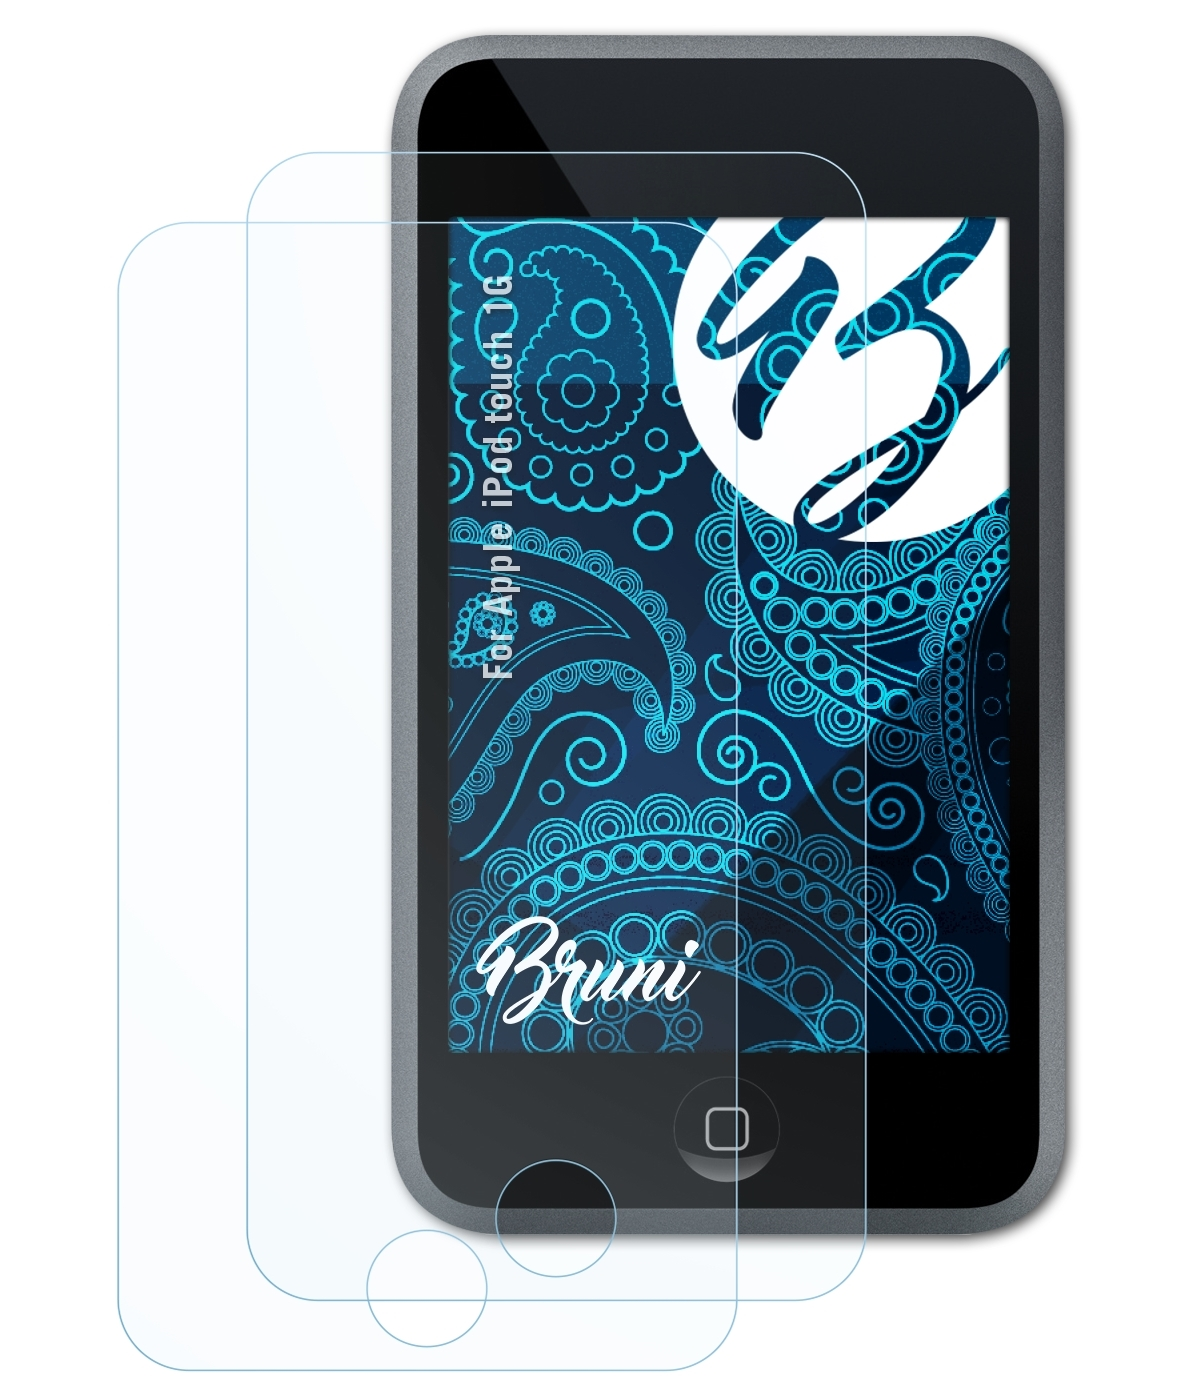 2x Schutzfolie(für touch 1G) Basics-Clear Apple iPod BRUNI